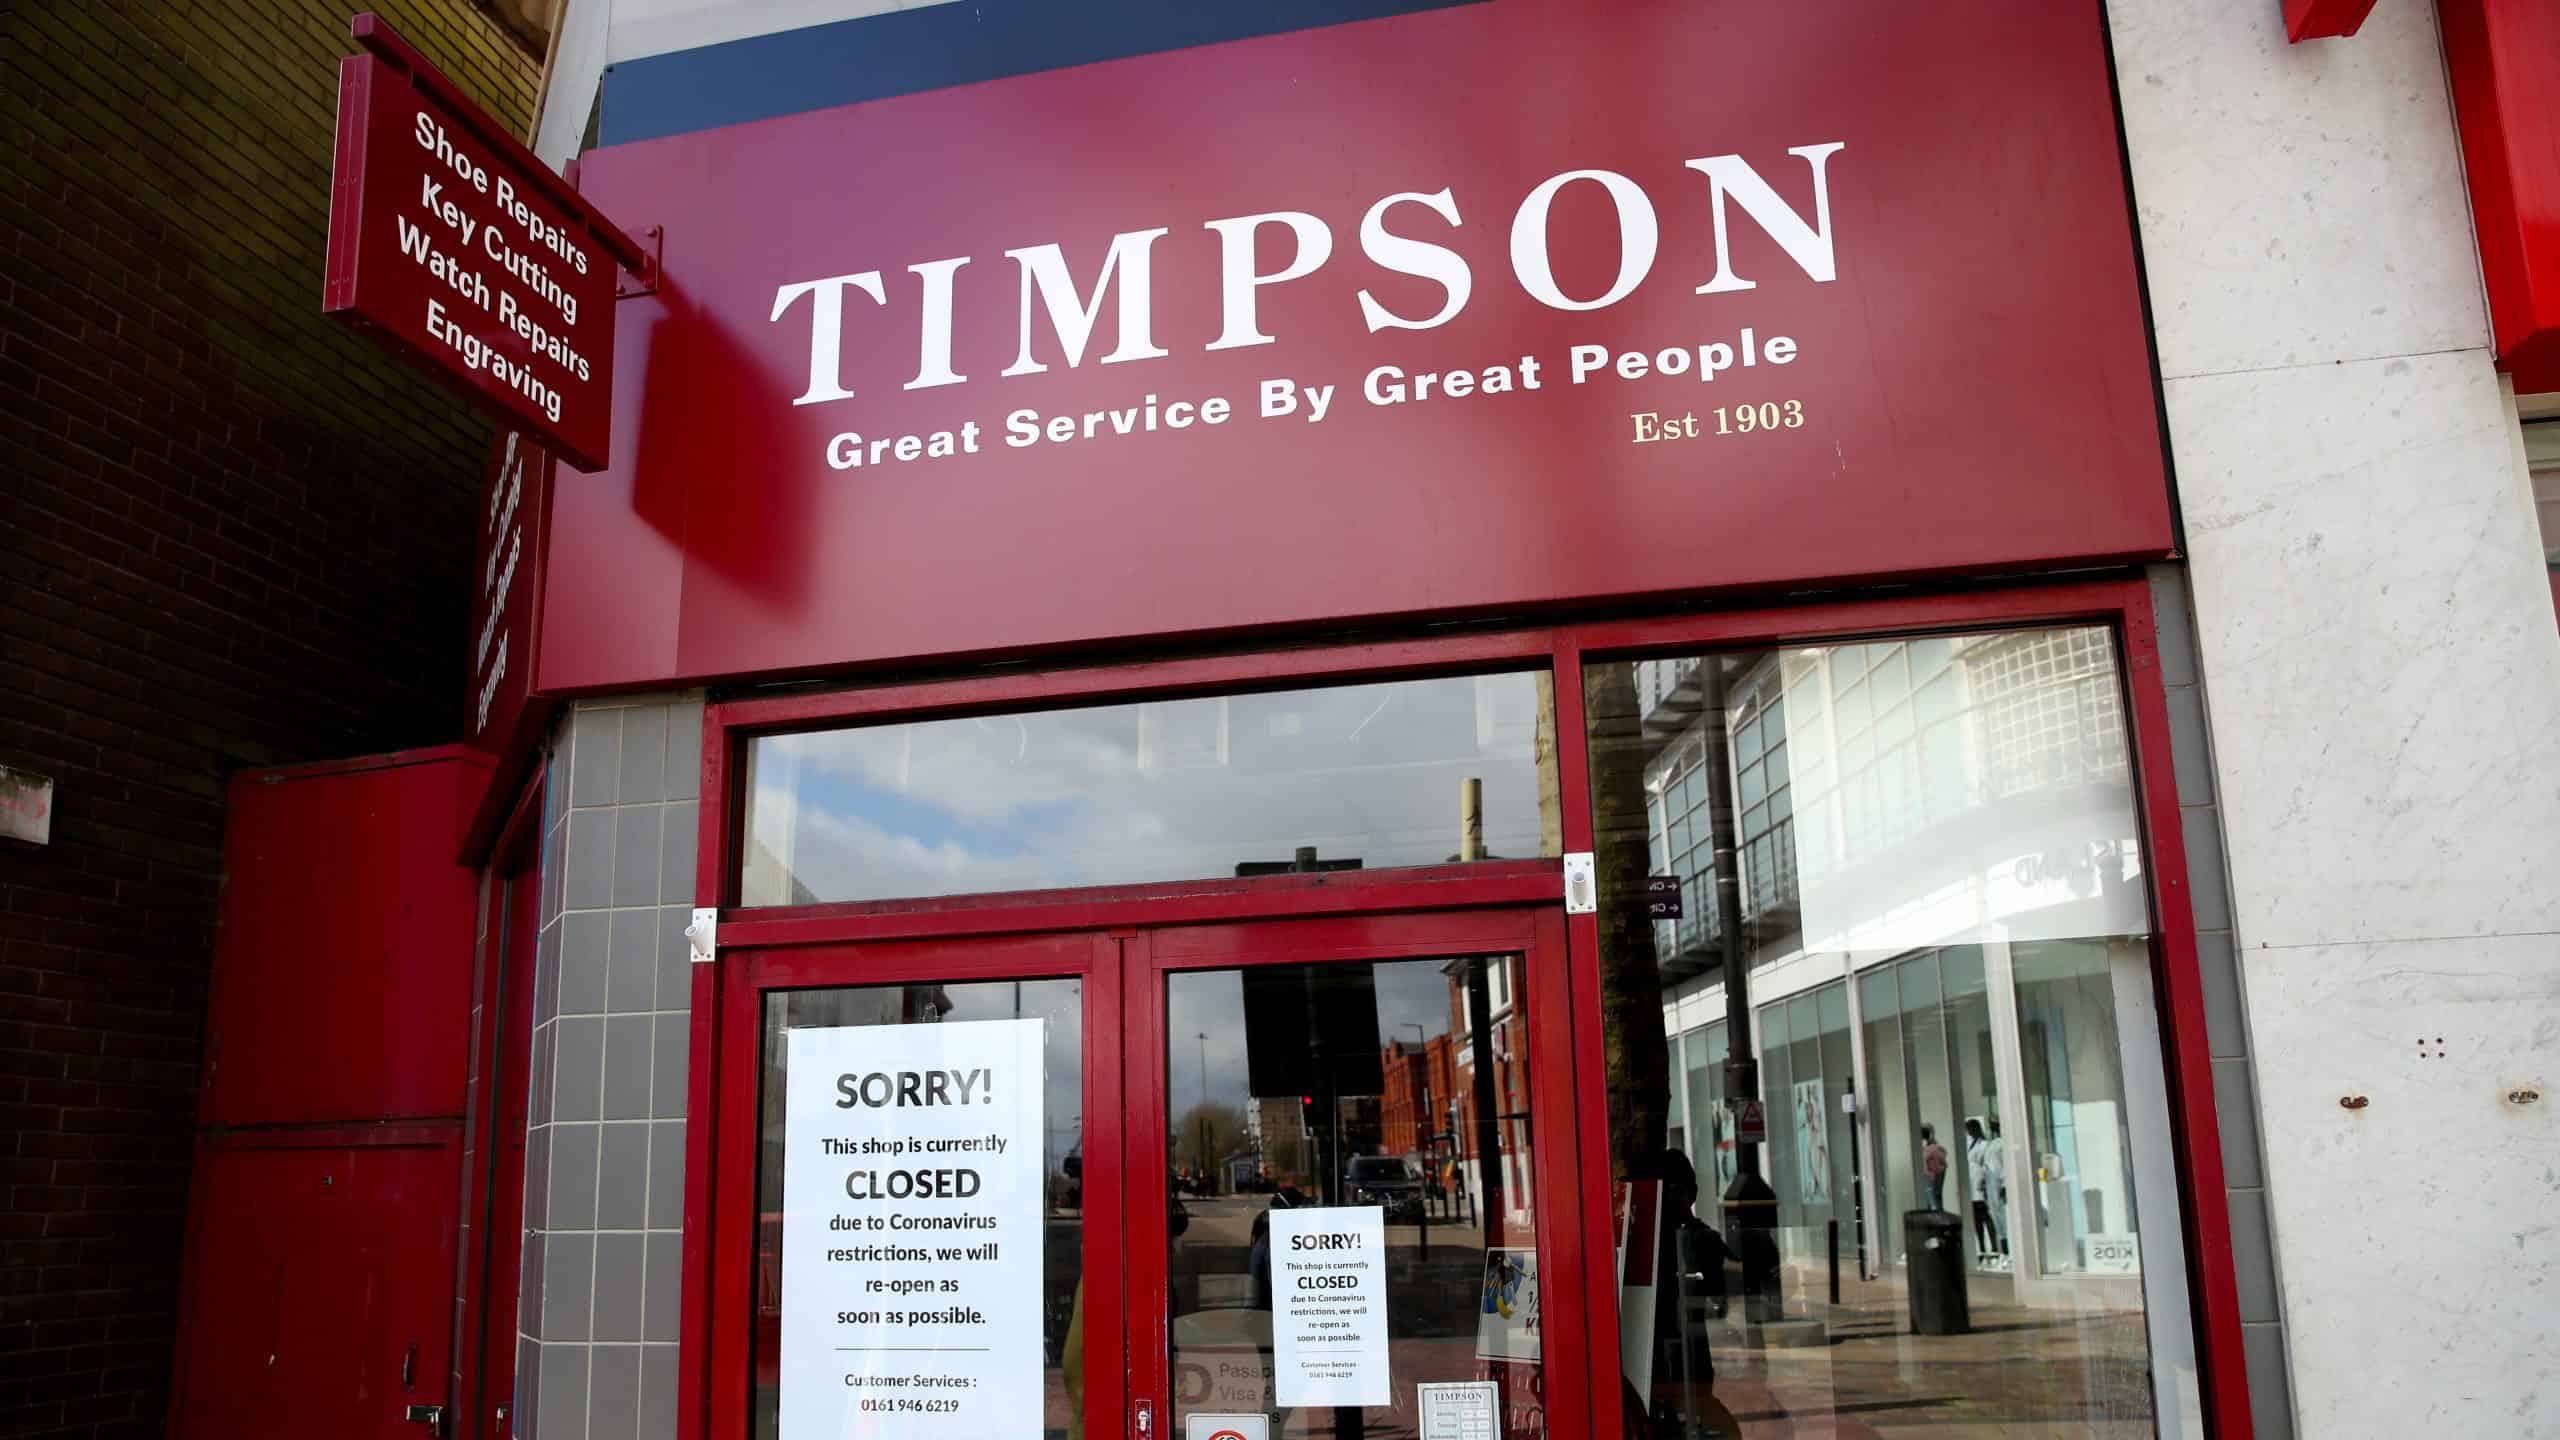 Timpson beweist, warum es sich um ein Werk von tadellosem moralischen Ansehen handelt